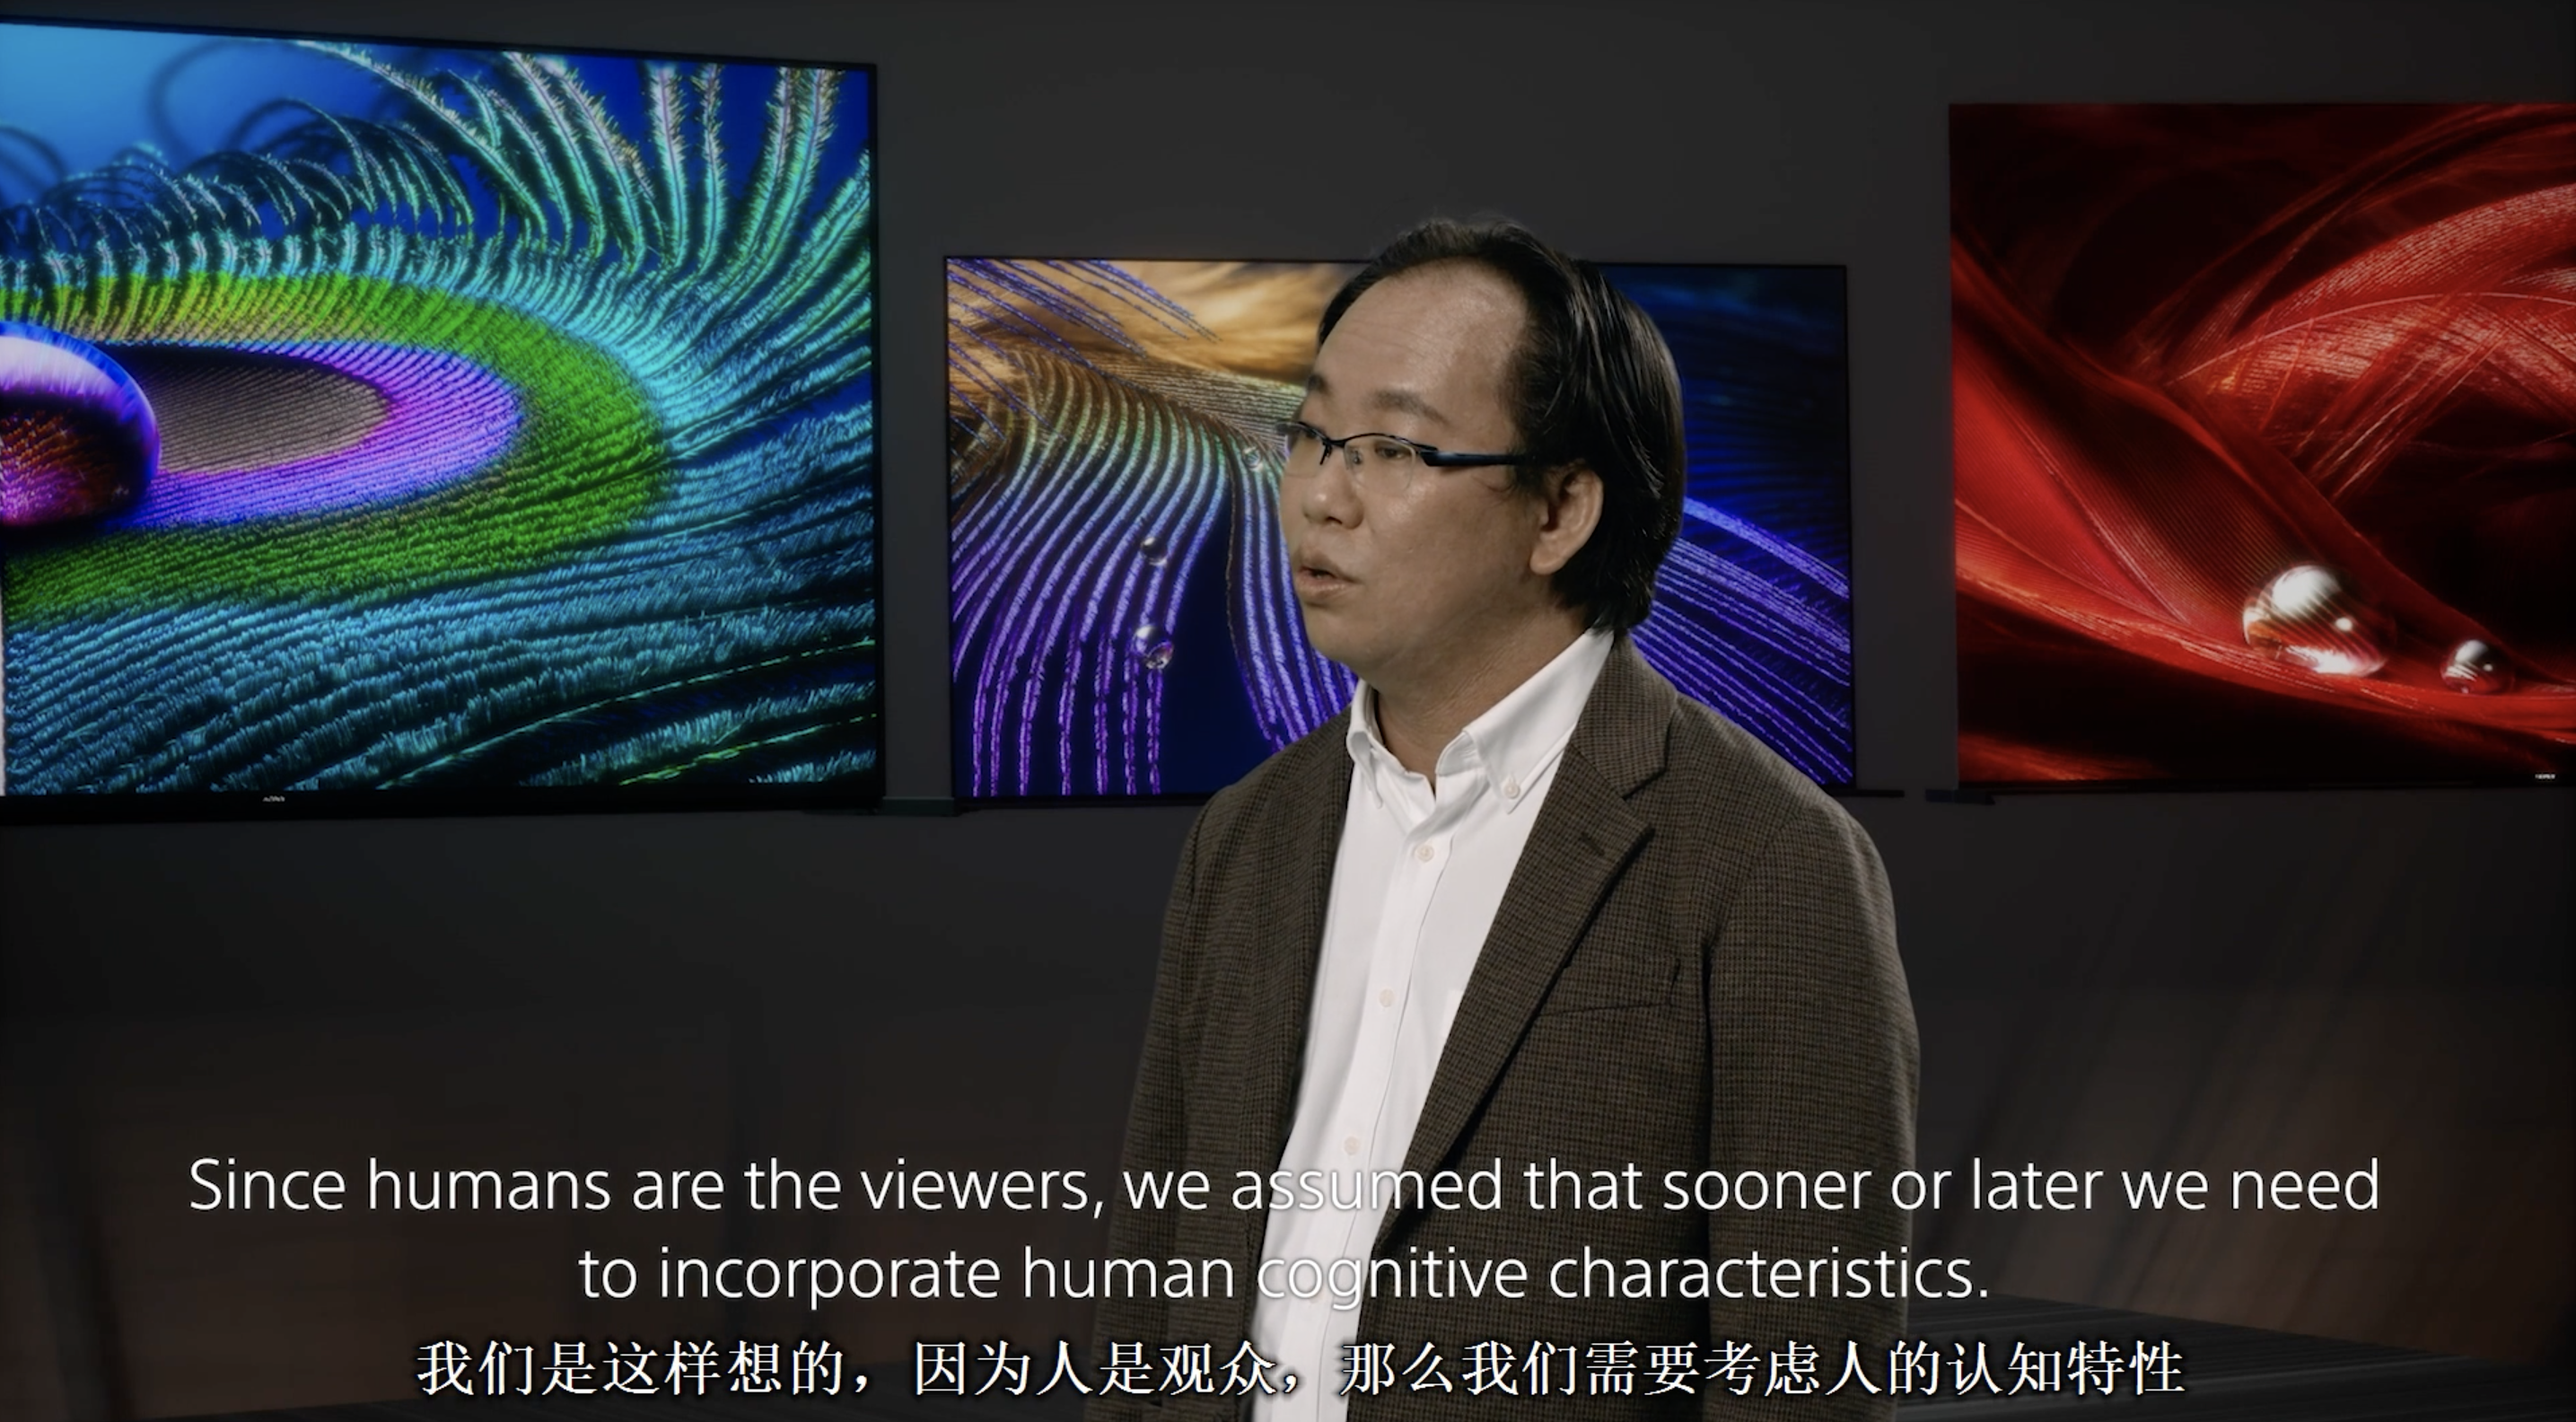 4361610079706 .pic hd - Sintesi del nuovo prodotto 2021 TV Sony: la prima smart TV cognitiva al mondo è qui e il nuovo chip è molto potente